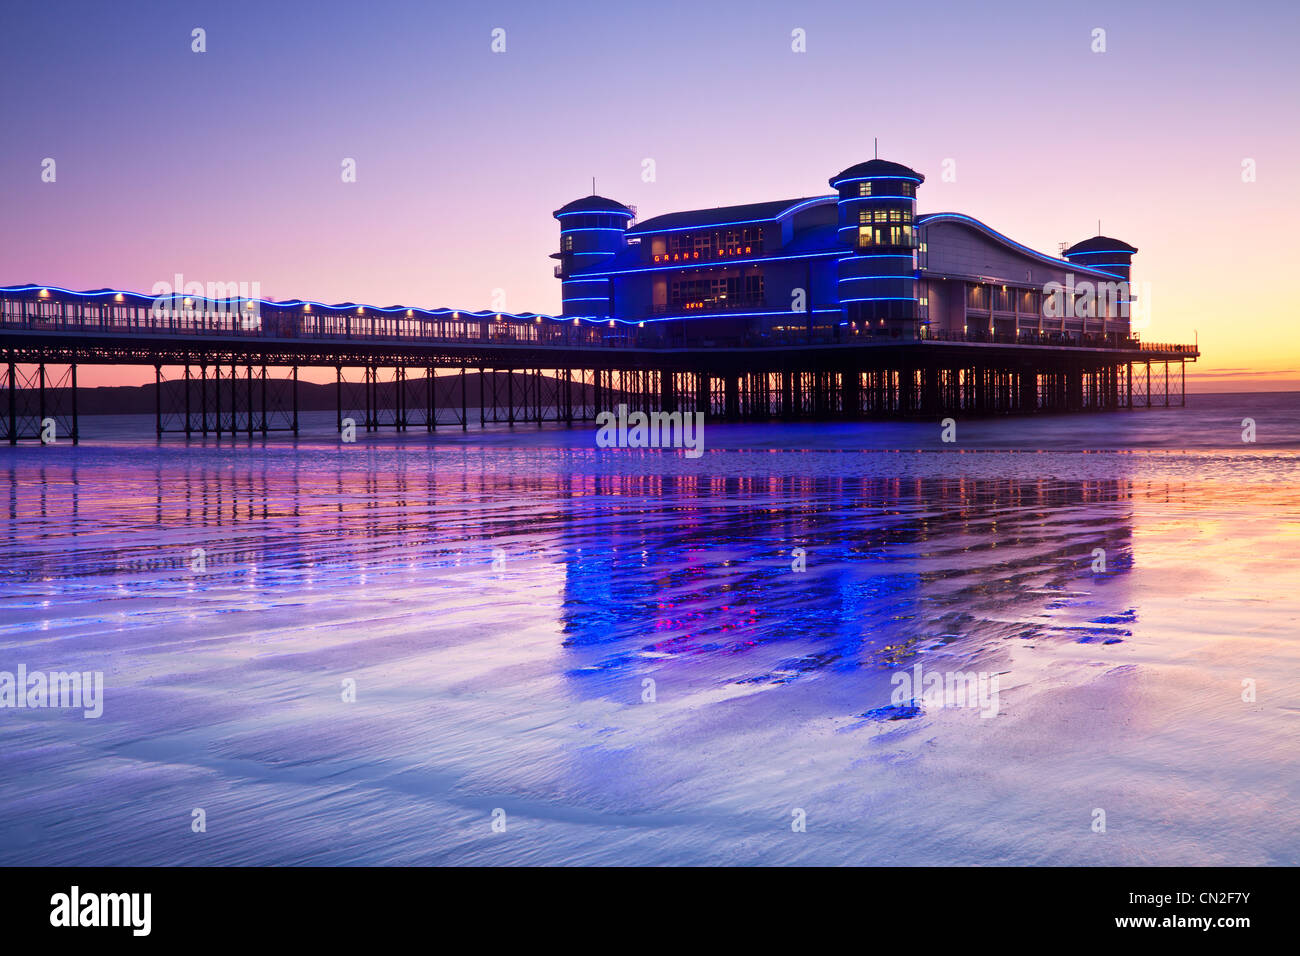 Dämmerung über dem Grand Pier bei Weston-Super-Mare, Somerset, England, UK spiegelt sich in dem nassen Sand des Strandes bei Flut. Stockfoto